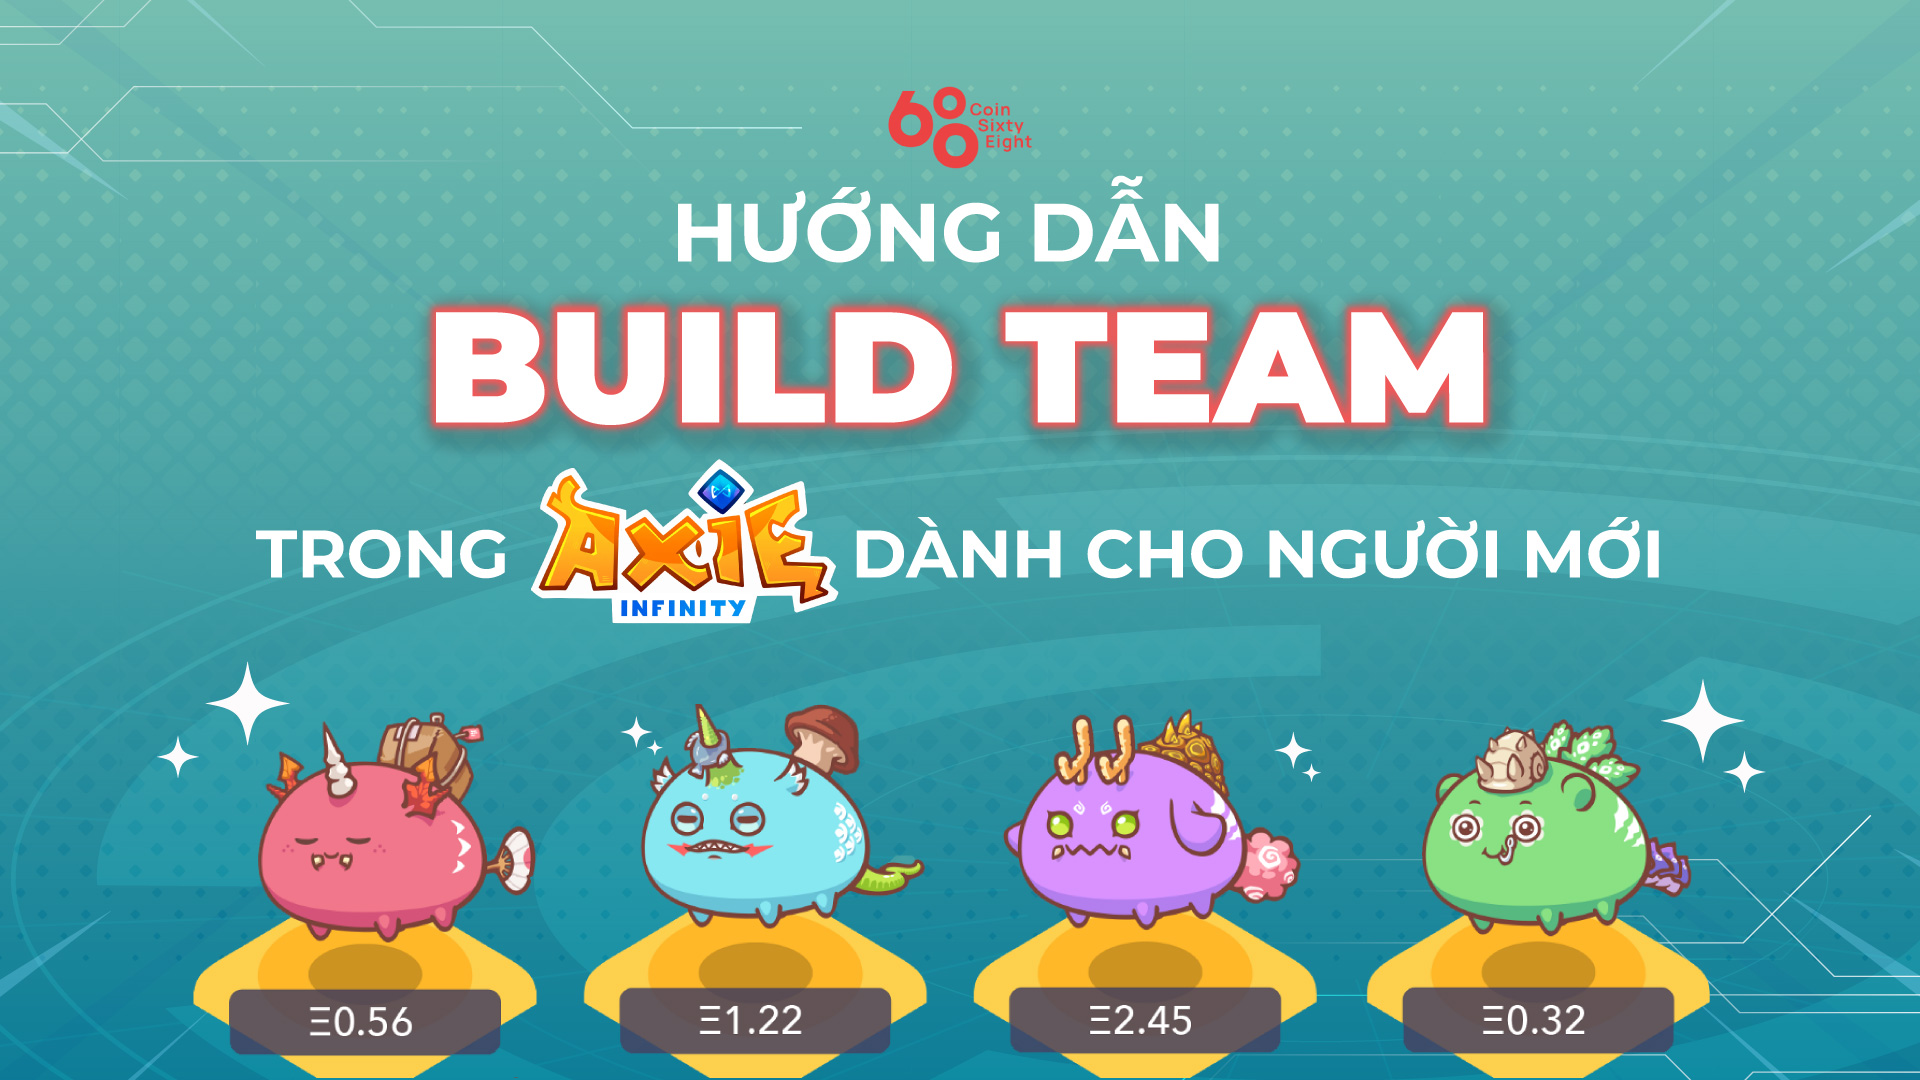 Hướng dẫn build team trong Axie Infinity dành cho người mới